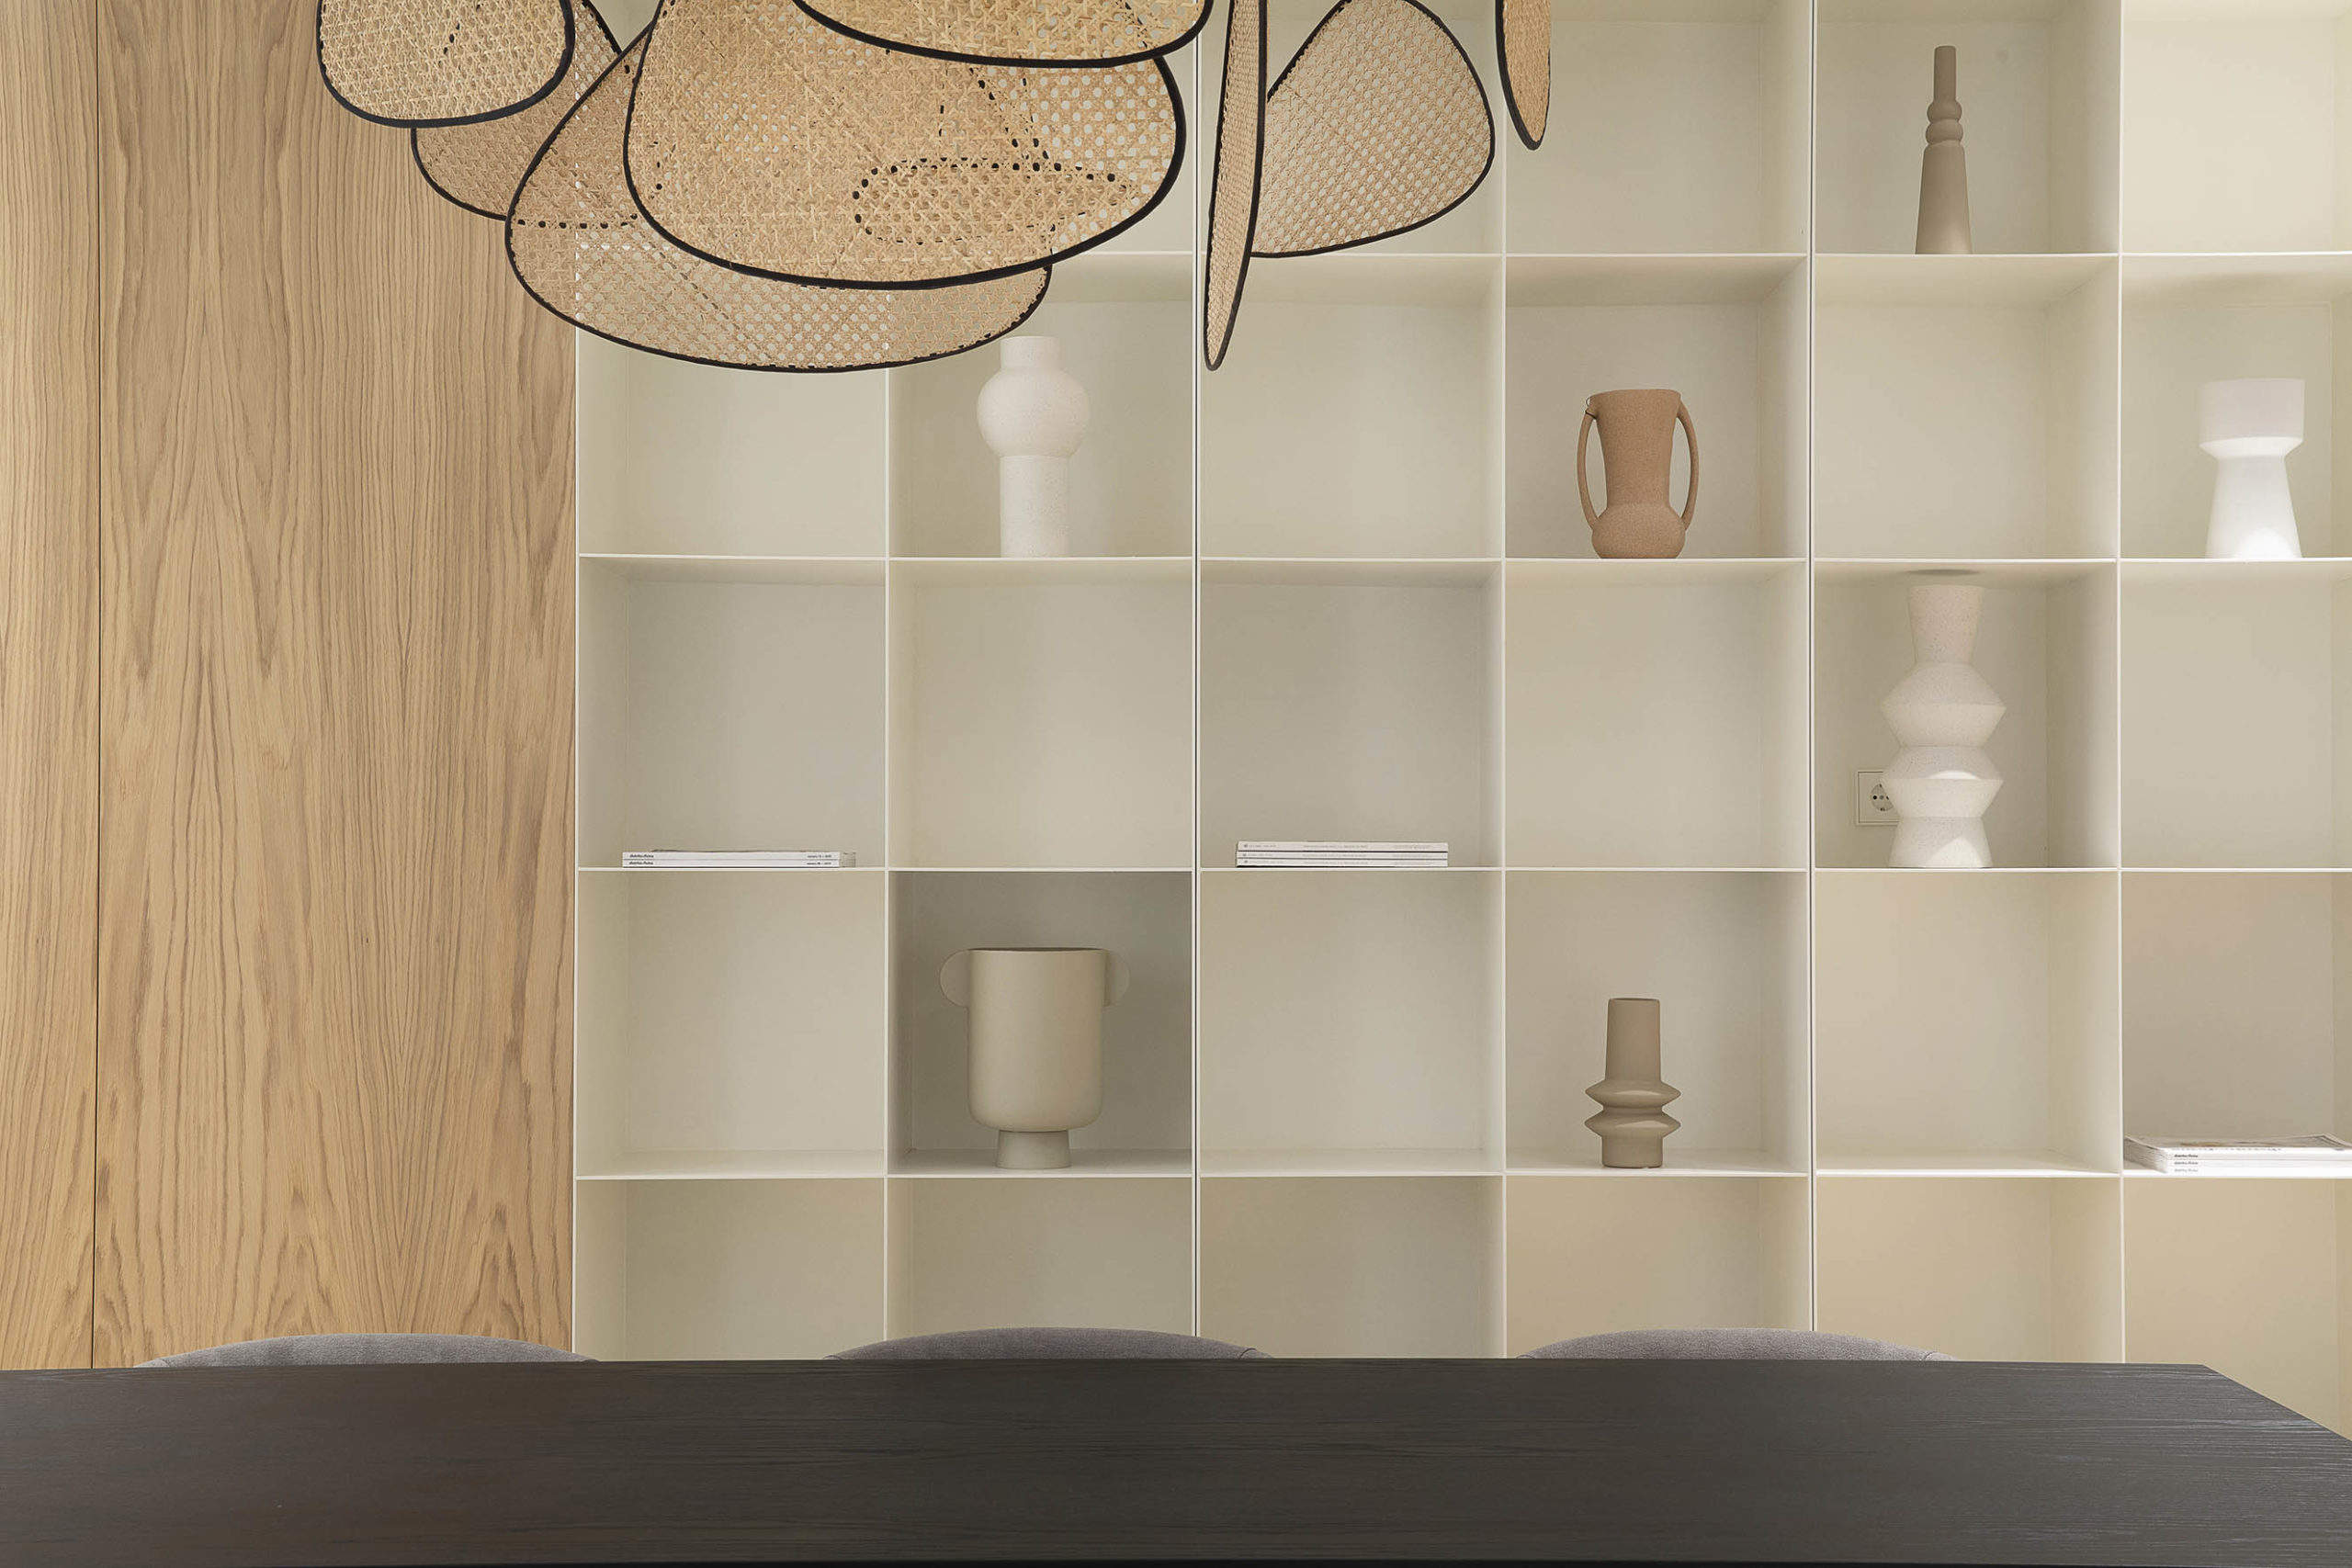 Combinar muebles y accesorios para crear un equilibrio estético y funcional